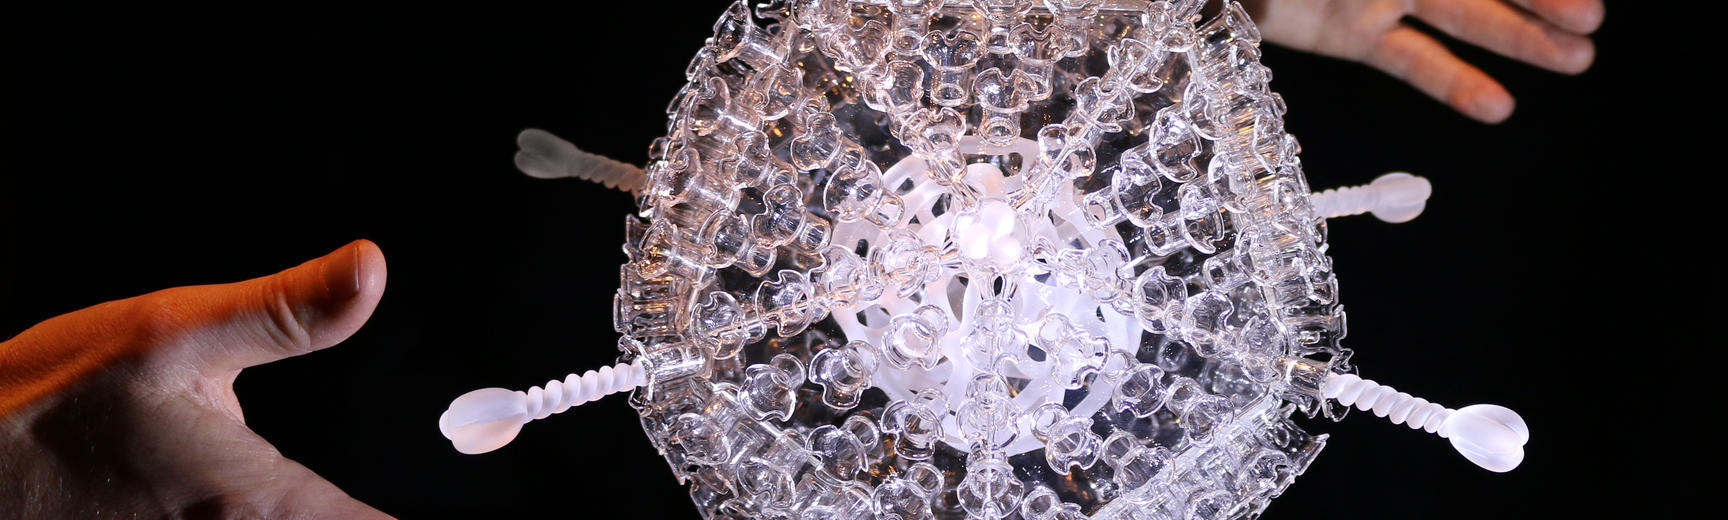 Glass artwork of Covid vaccine